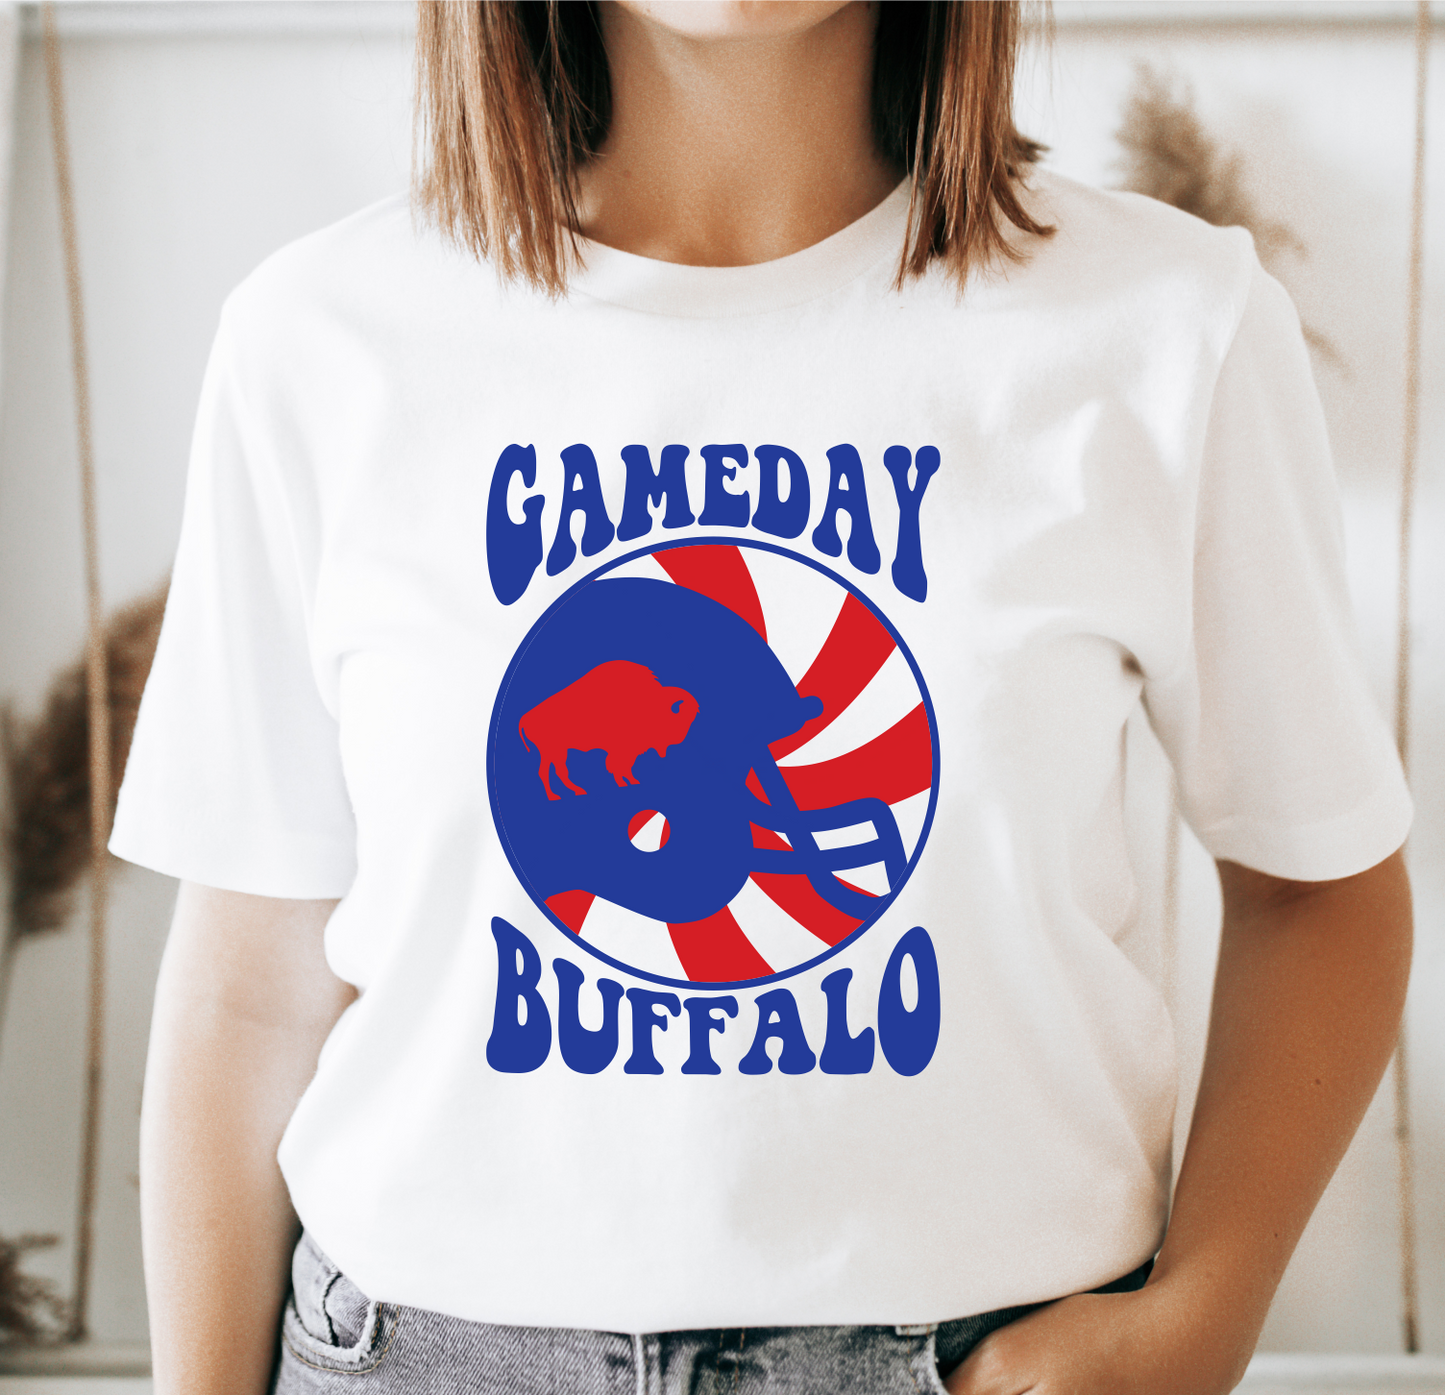 Gameday Buffalo t-shirt, Buffalo gameday shirt, Buffalo tee